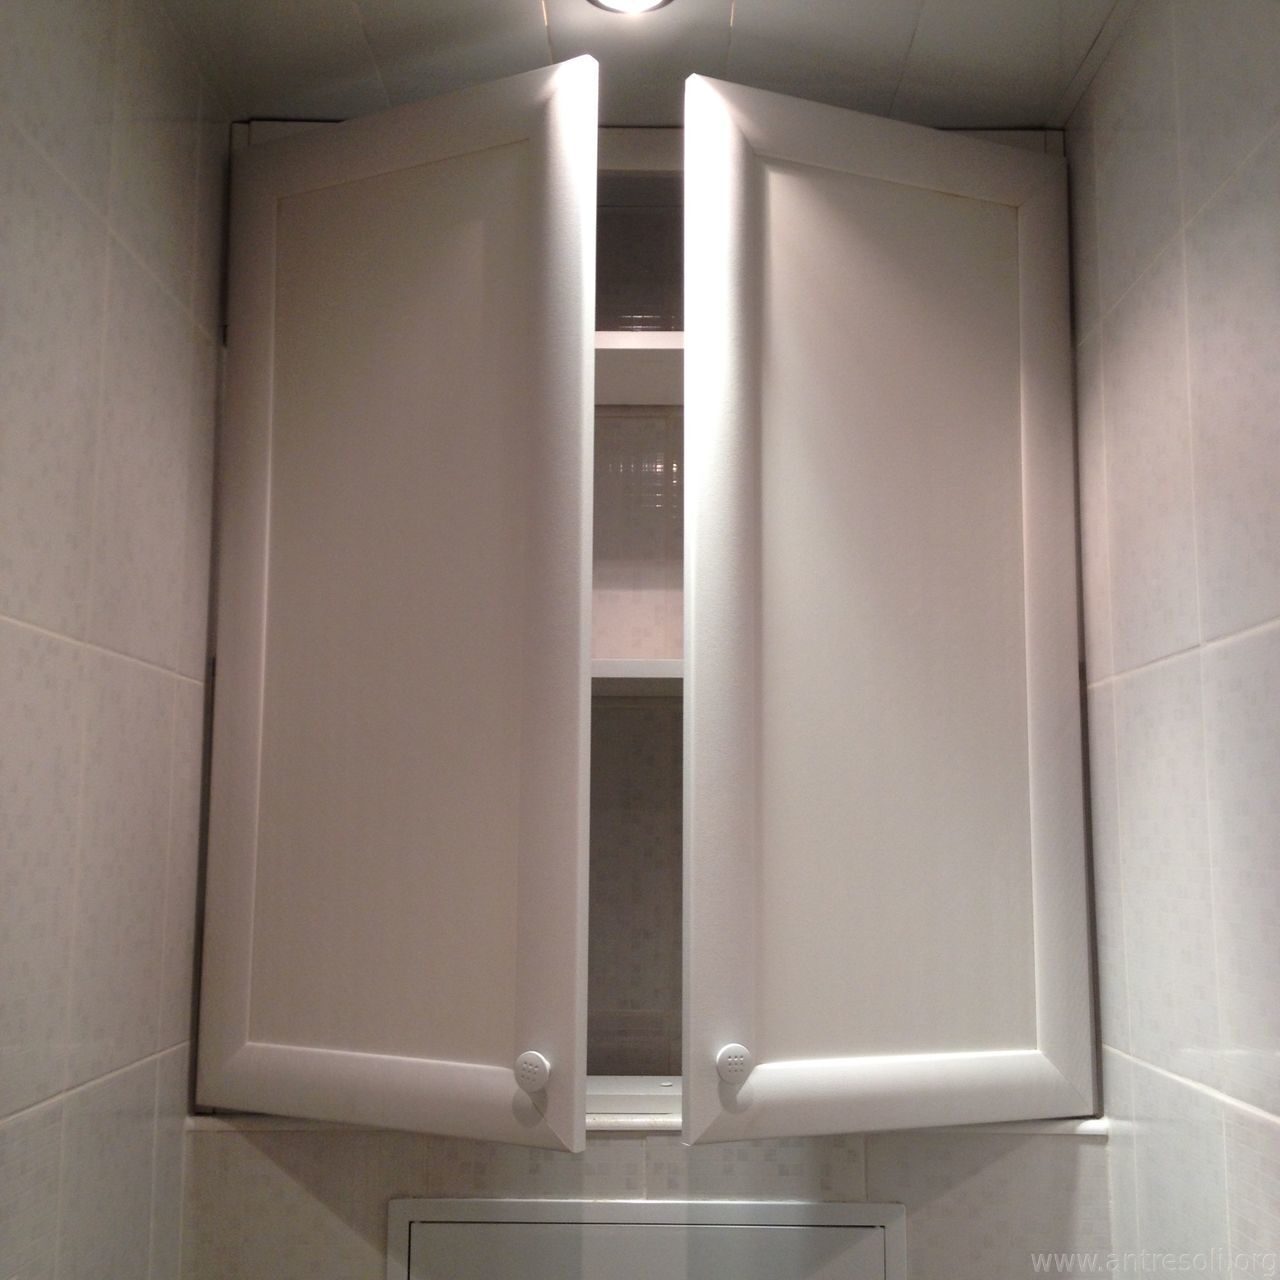 металлическая дверца для сантехнического шкафа в туалете